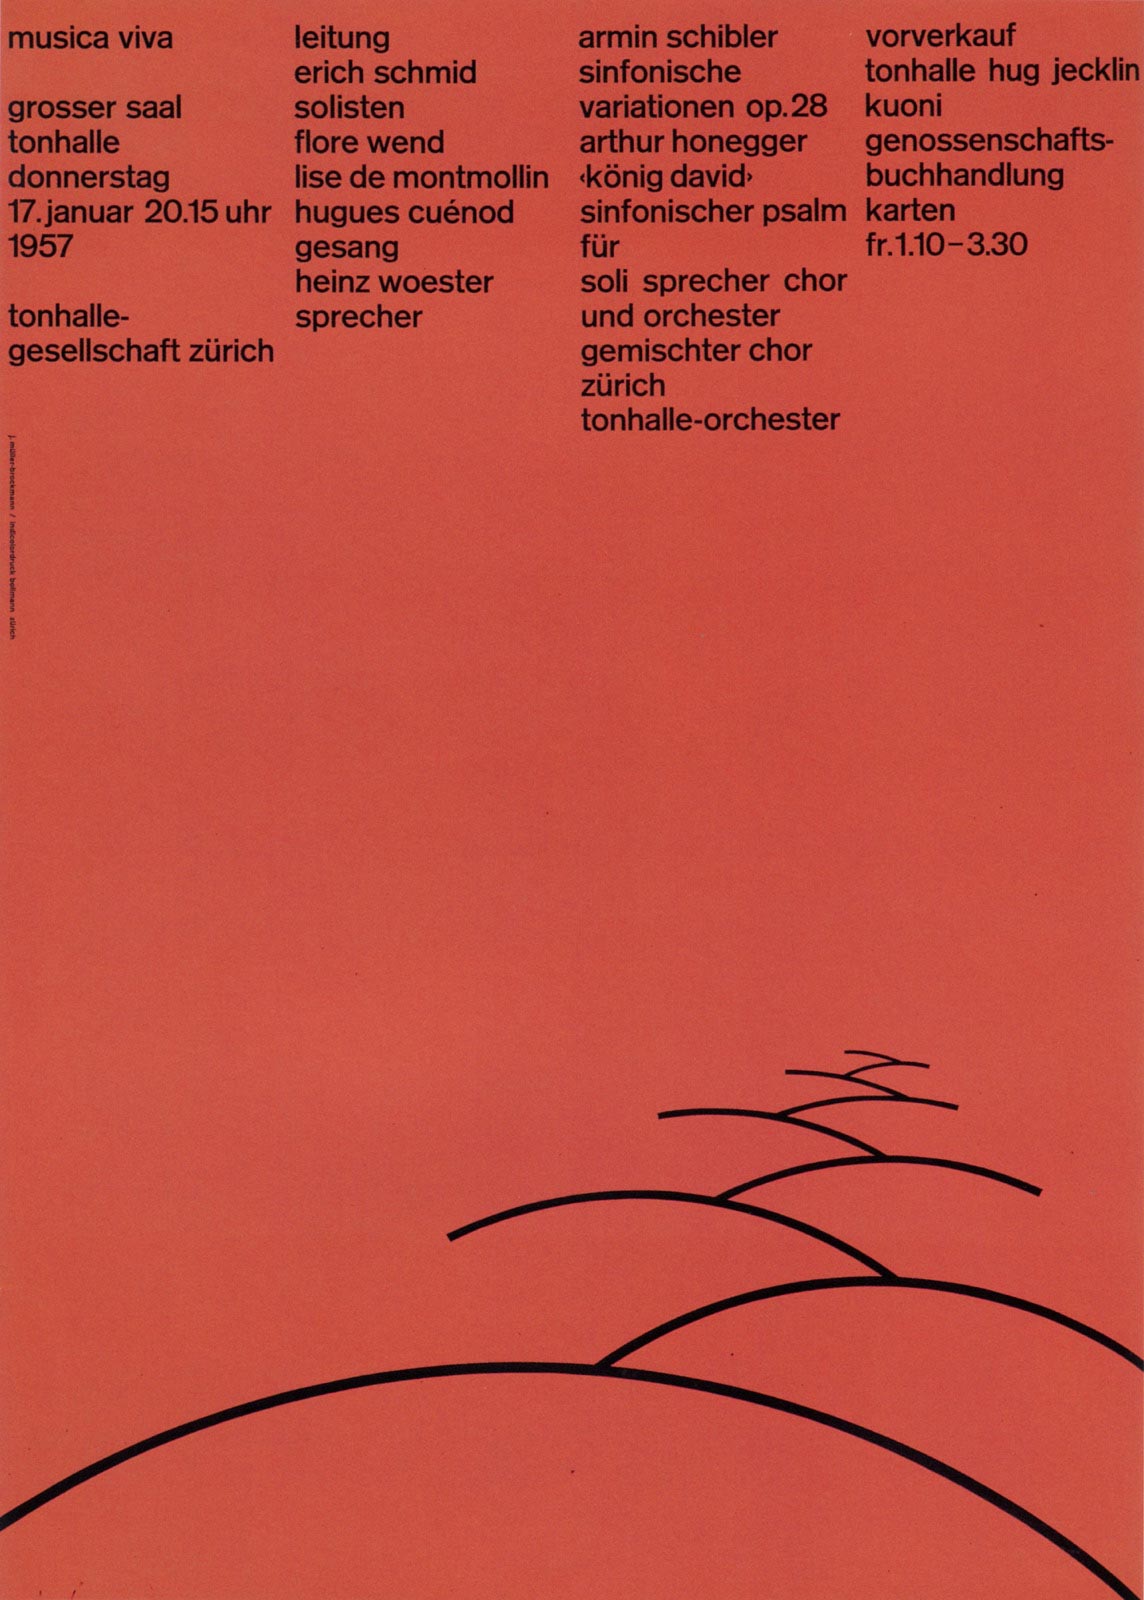 1. Zurich Tonhalle. musica viva. Concert poster, 1957